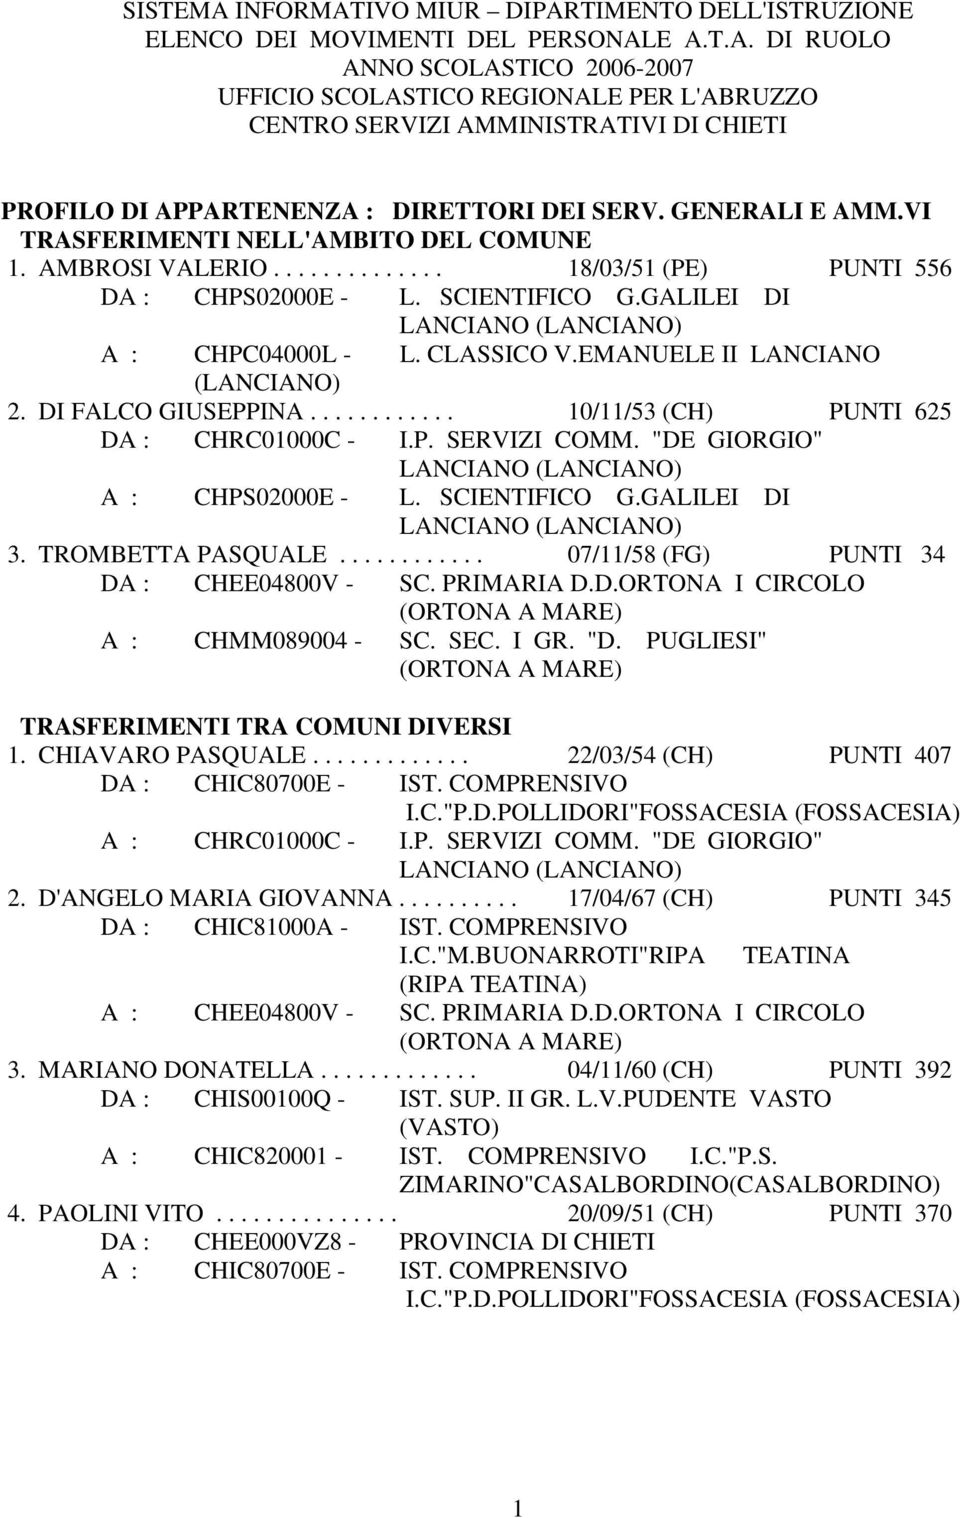 EMANUELE II LANCIANO 2. DI FALCO GIUSEPPINA............ 10/11/53 (CH) PUNTI 625 DA : CHRC01000C - I.P. SERVIZI COMM. "DE GIORGIO" LANCIANO A : CHPS02000E - L. SCIENTIFICO G.GALILEI DI LANCIANO 3.